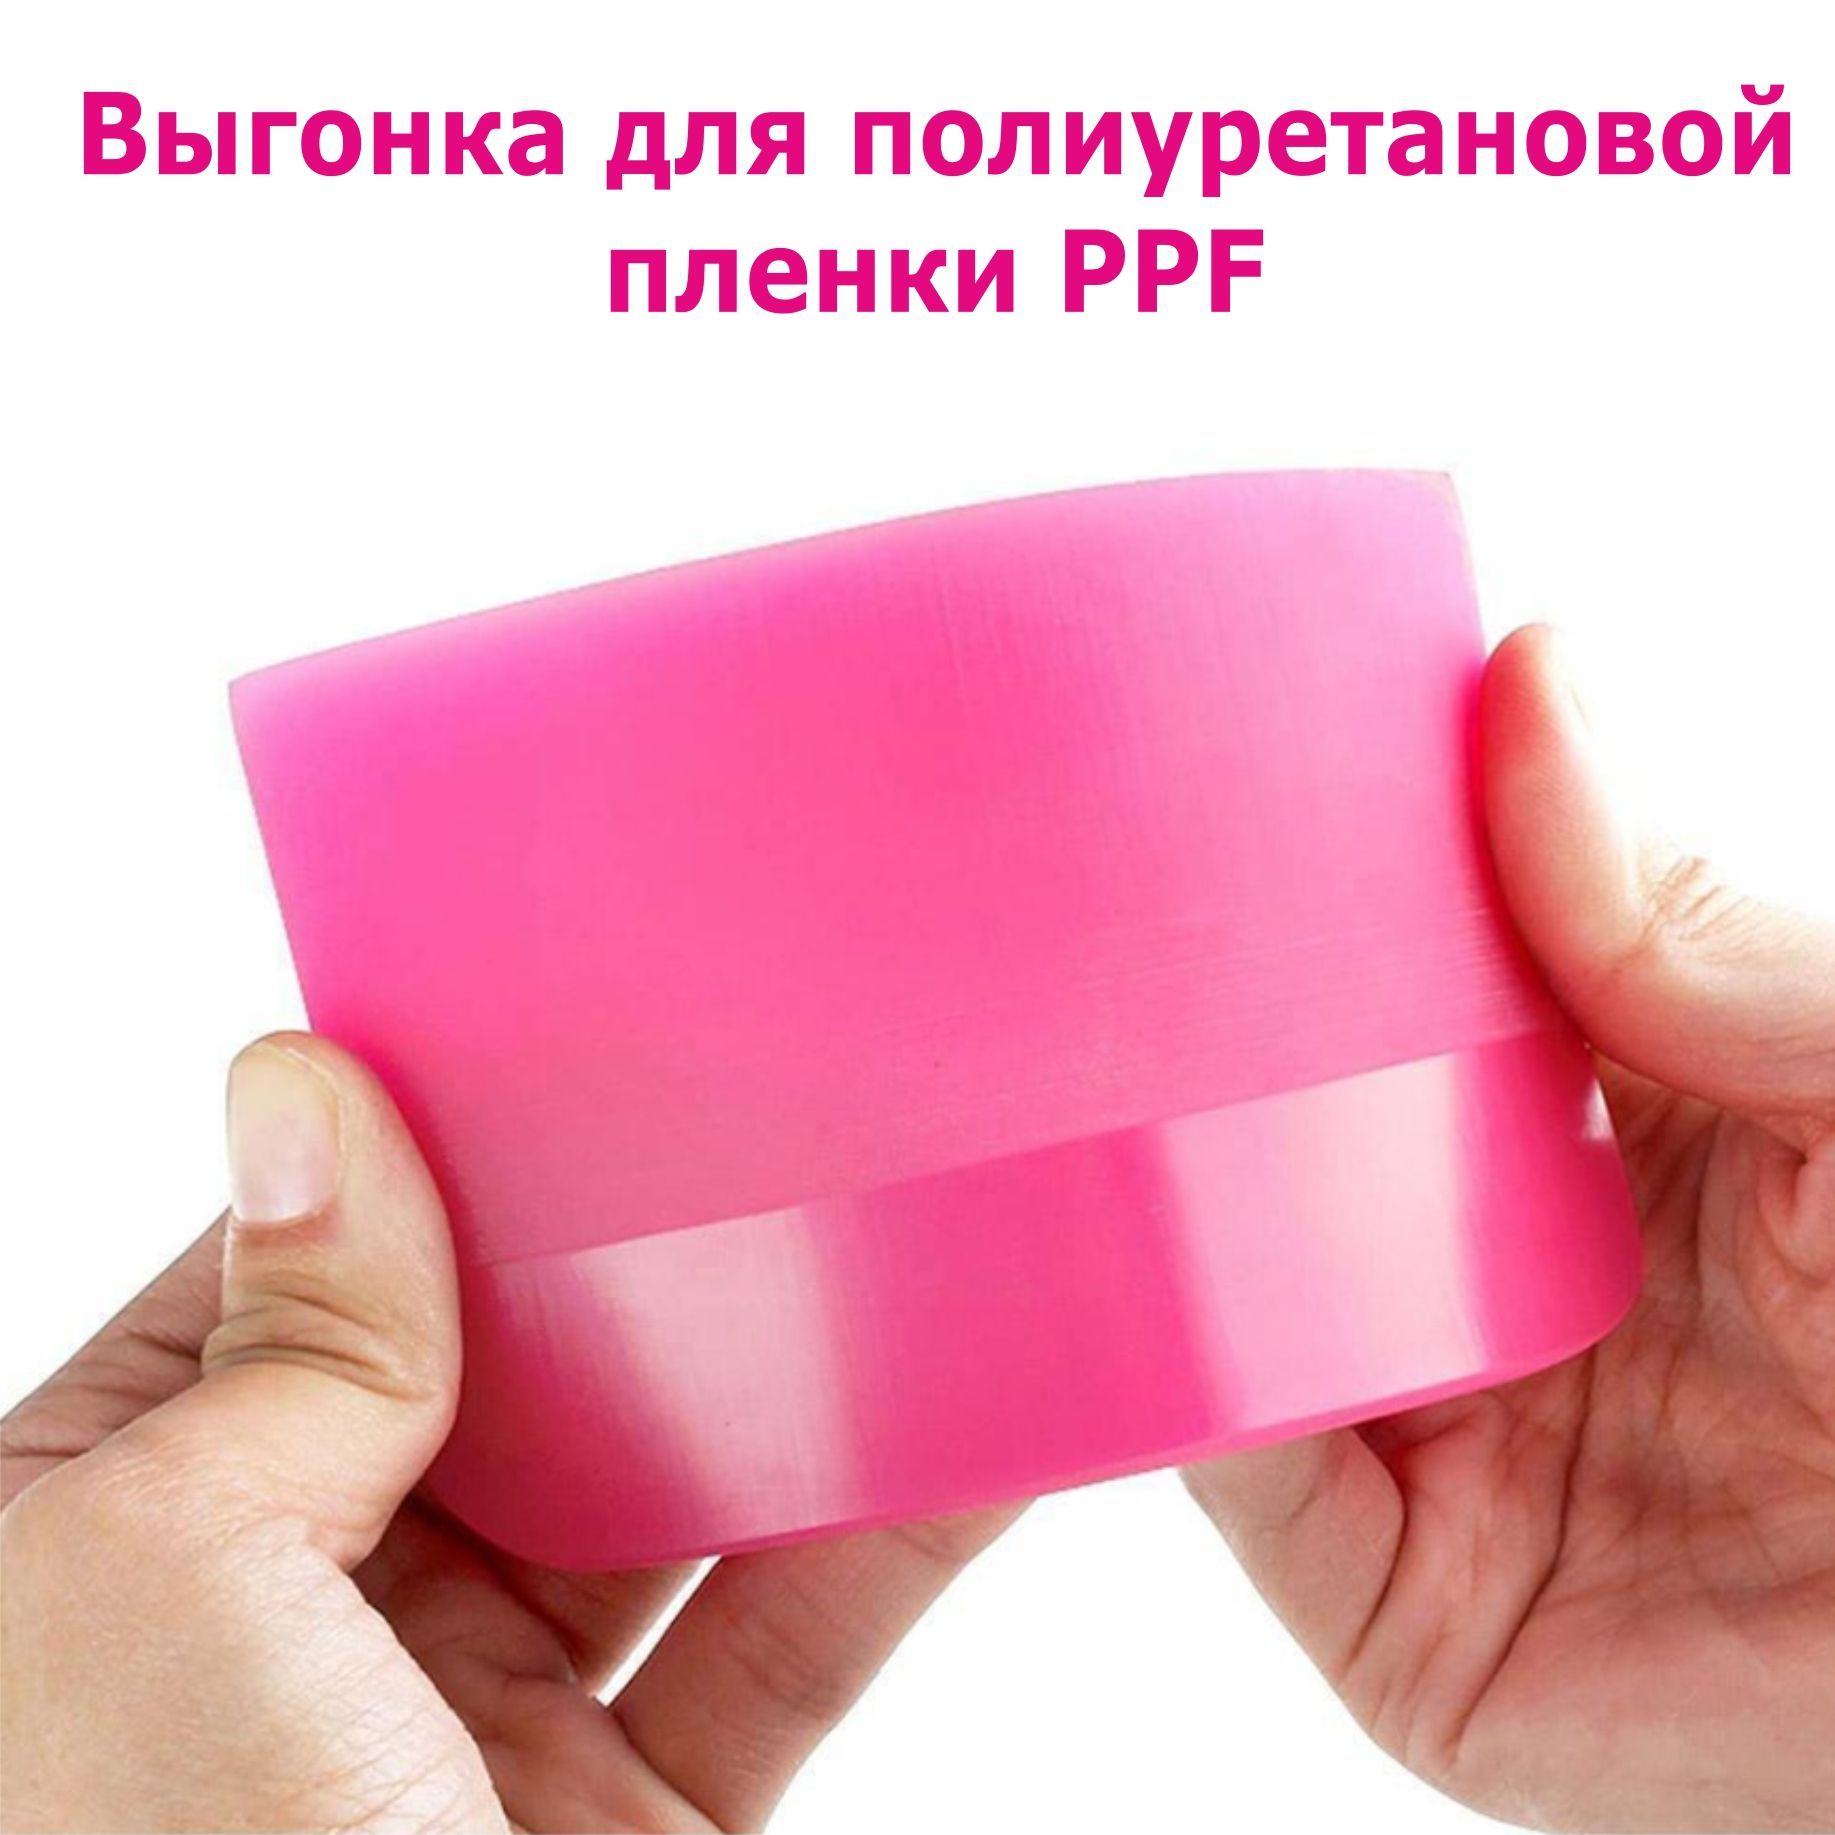 ВыгонкаракельдляполиуретановойпленкиPPF,розовая